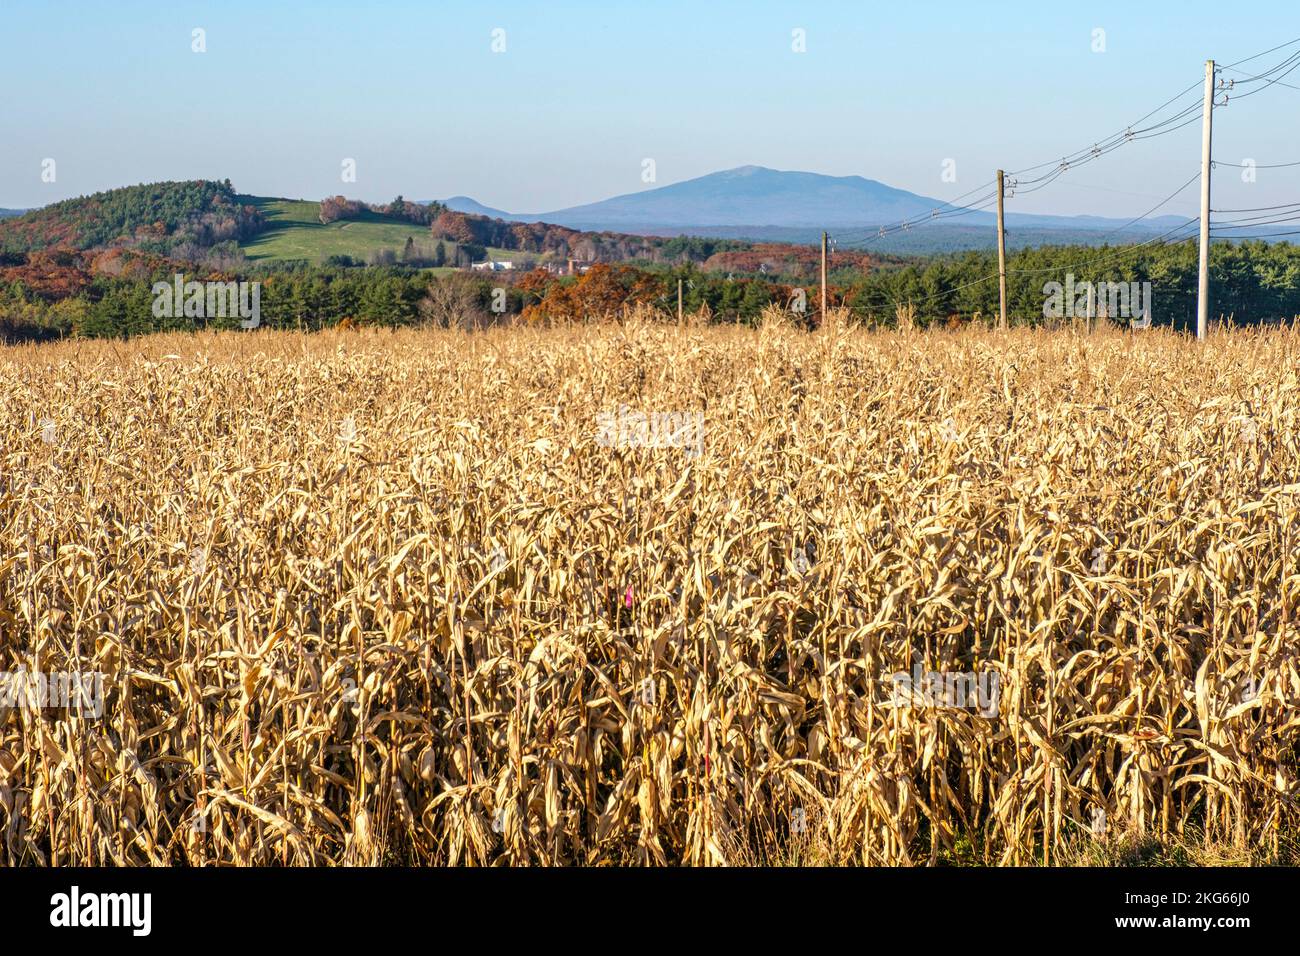 Blick auf den Monadnock von einem Feld auf dem Gipfel eines Hügels in Templeton, MA Stockfoto